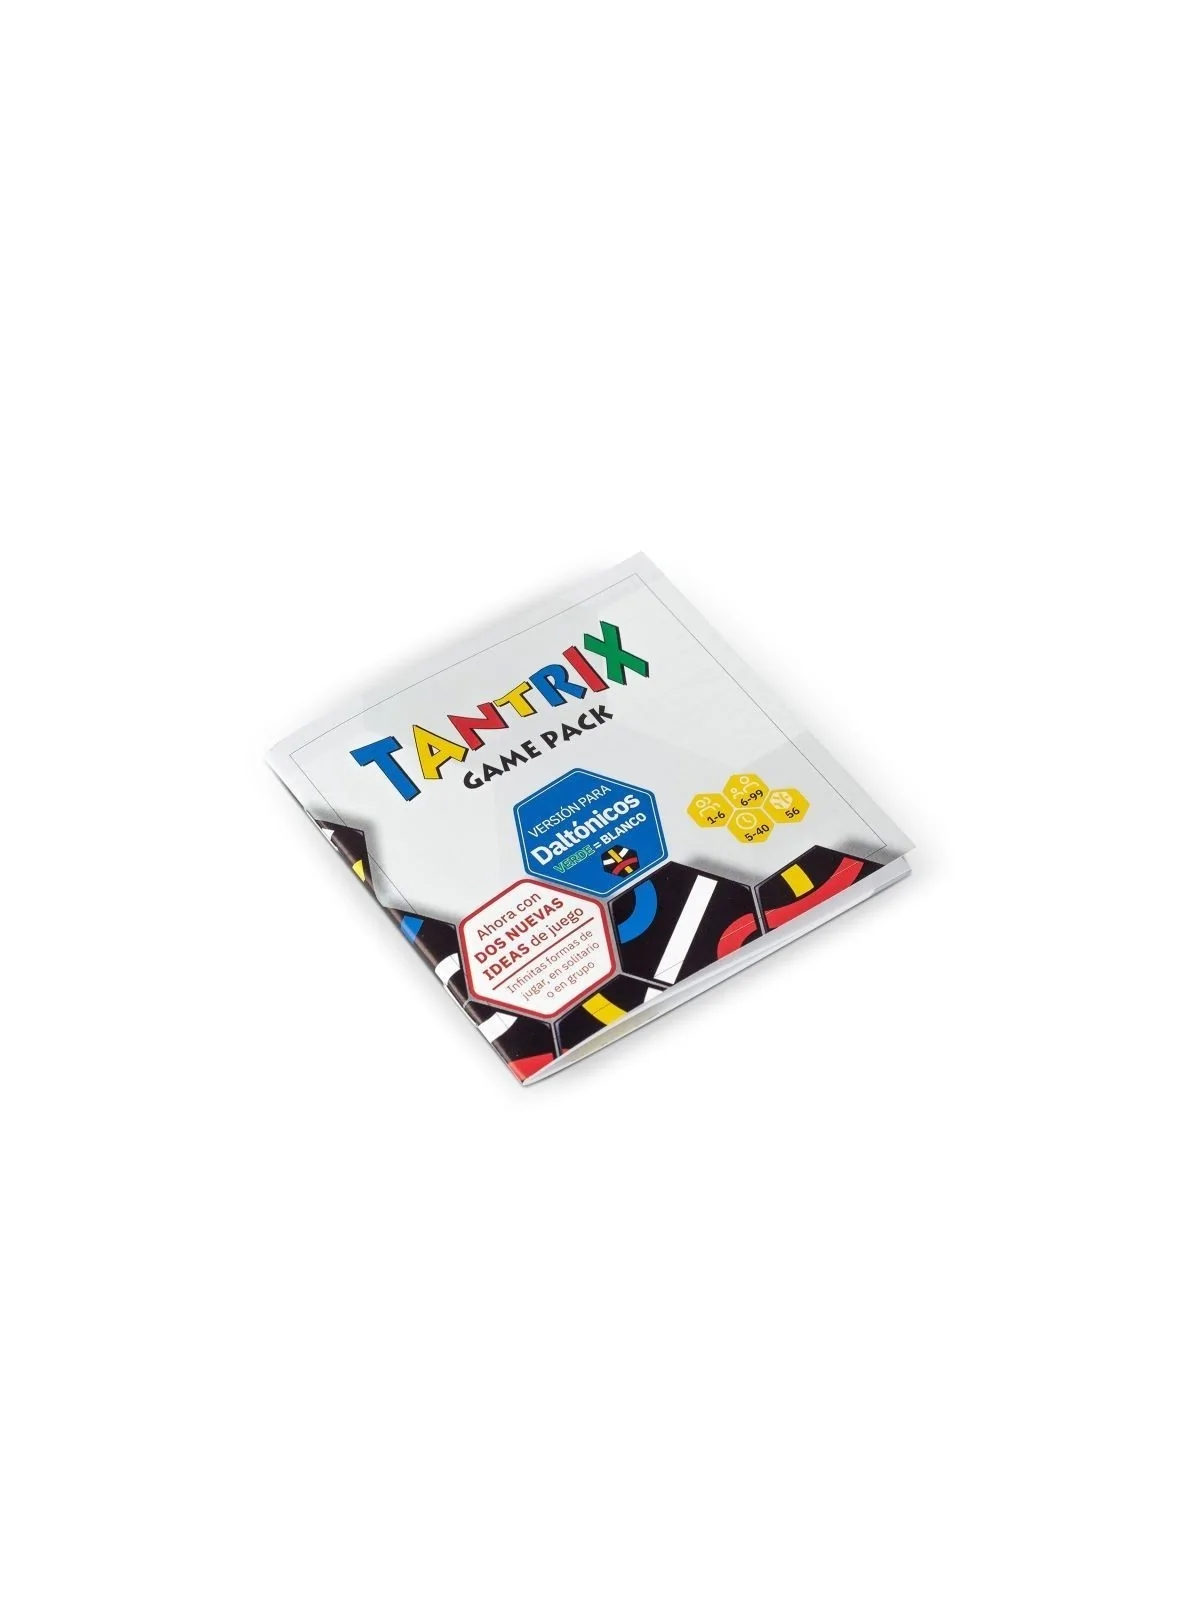 Comprar Tantrix Game Pack, Versión Daltónicos barato al mejor precio 3